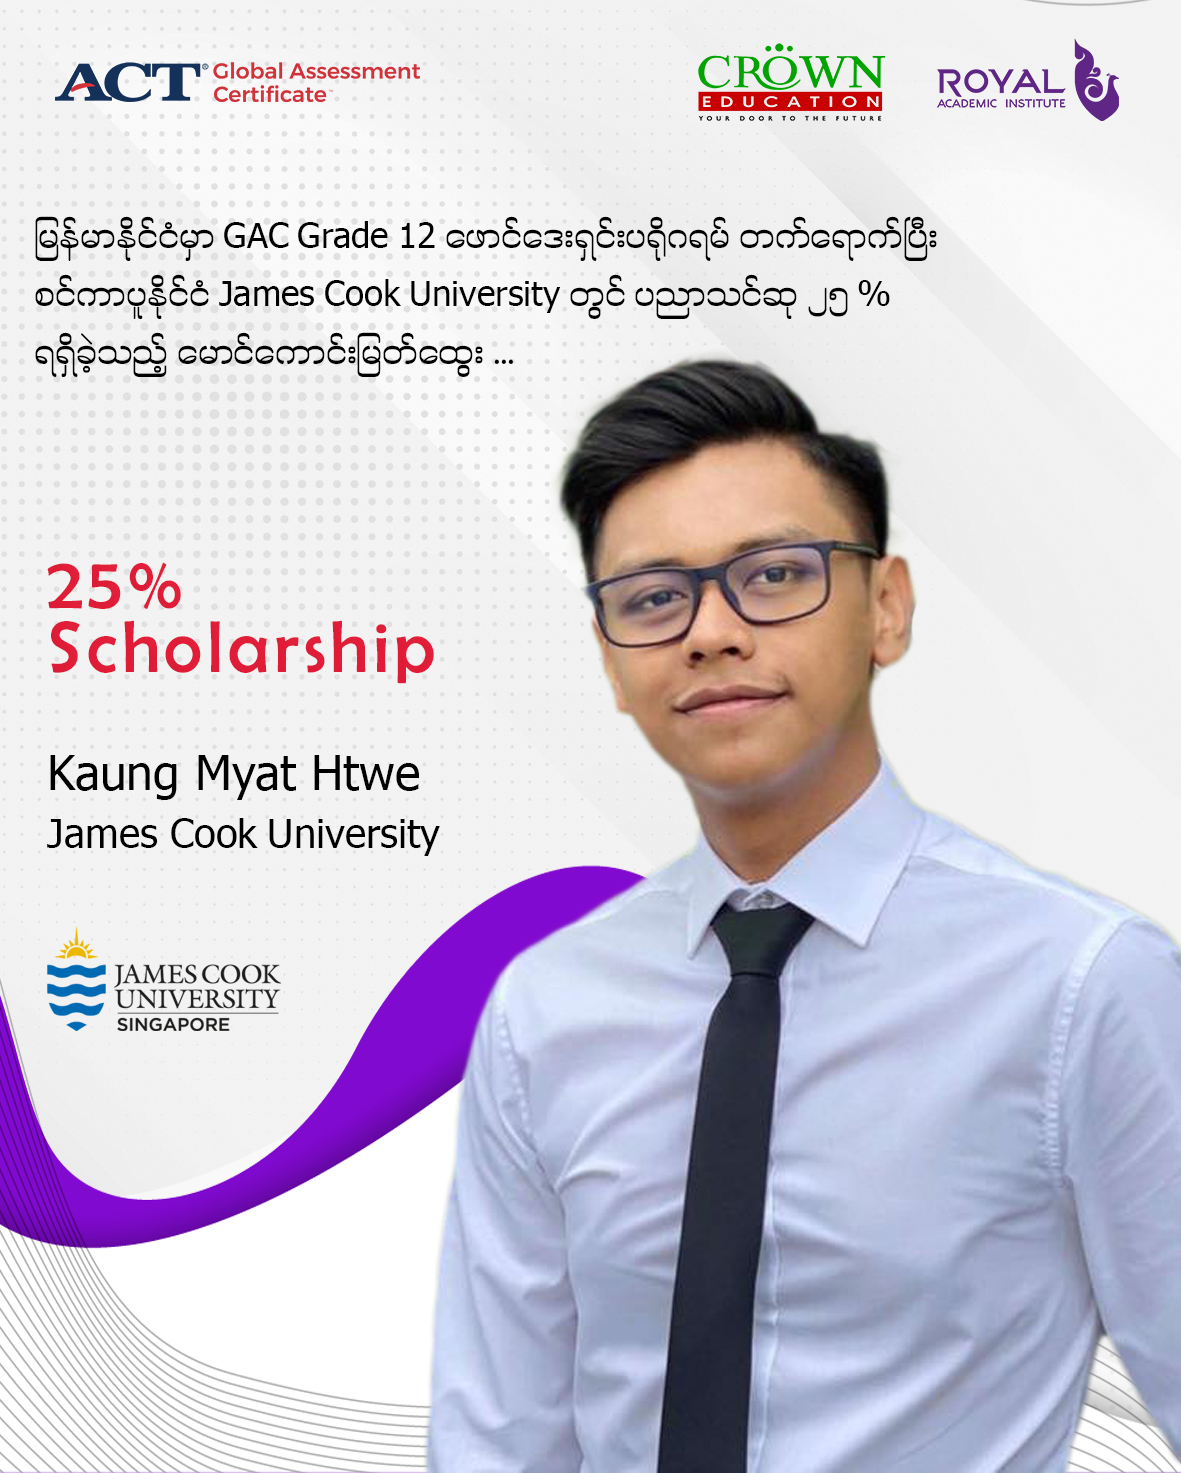 မြန်မာနိုင်ငံမှာ GAC GRADE 12 ဖောင်ဒေးရှင်း ပရိုဂရမ် တက်ရောက်ပြီး စင်ကာပူနိုင်ငံ JAMES COOK UNIVERSITY တွင်ပညာသင်ဆု ၂၅% ရရှိခဲ့သည့် မောင်ကောင်းမြတ်ထွေး